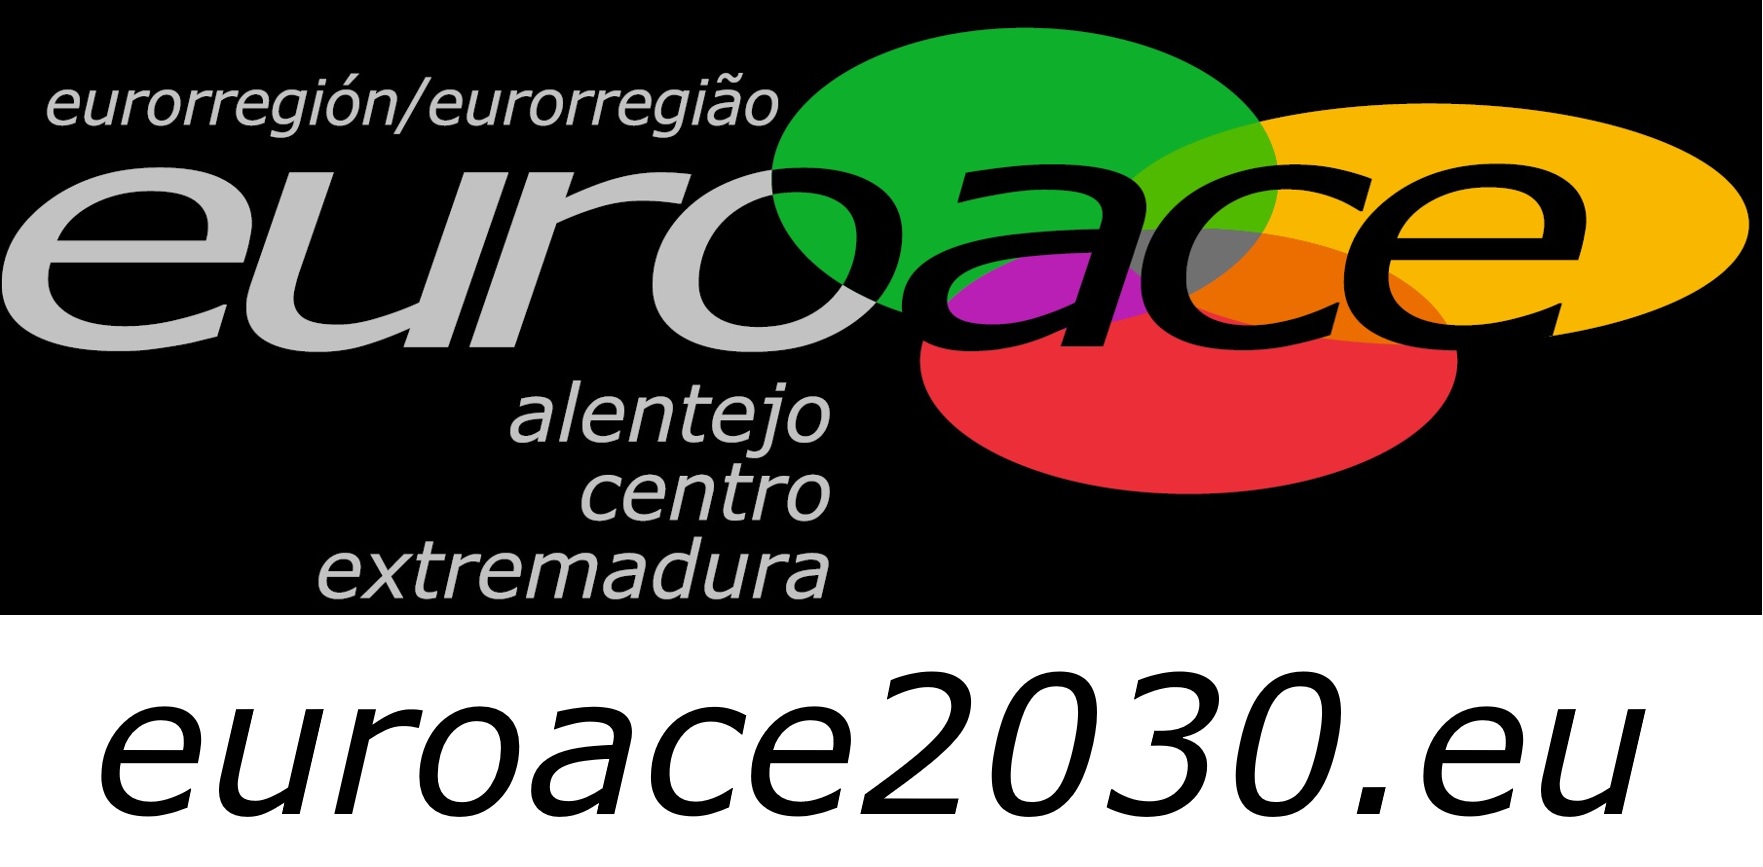 euroace2030.jpg